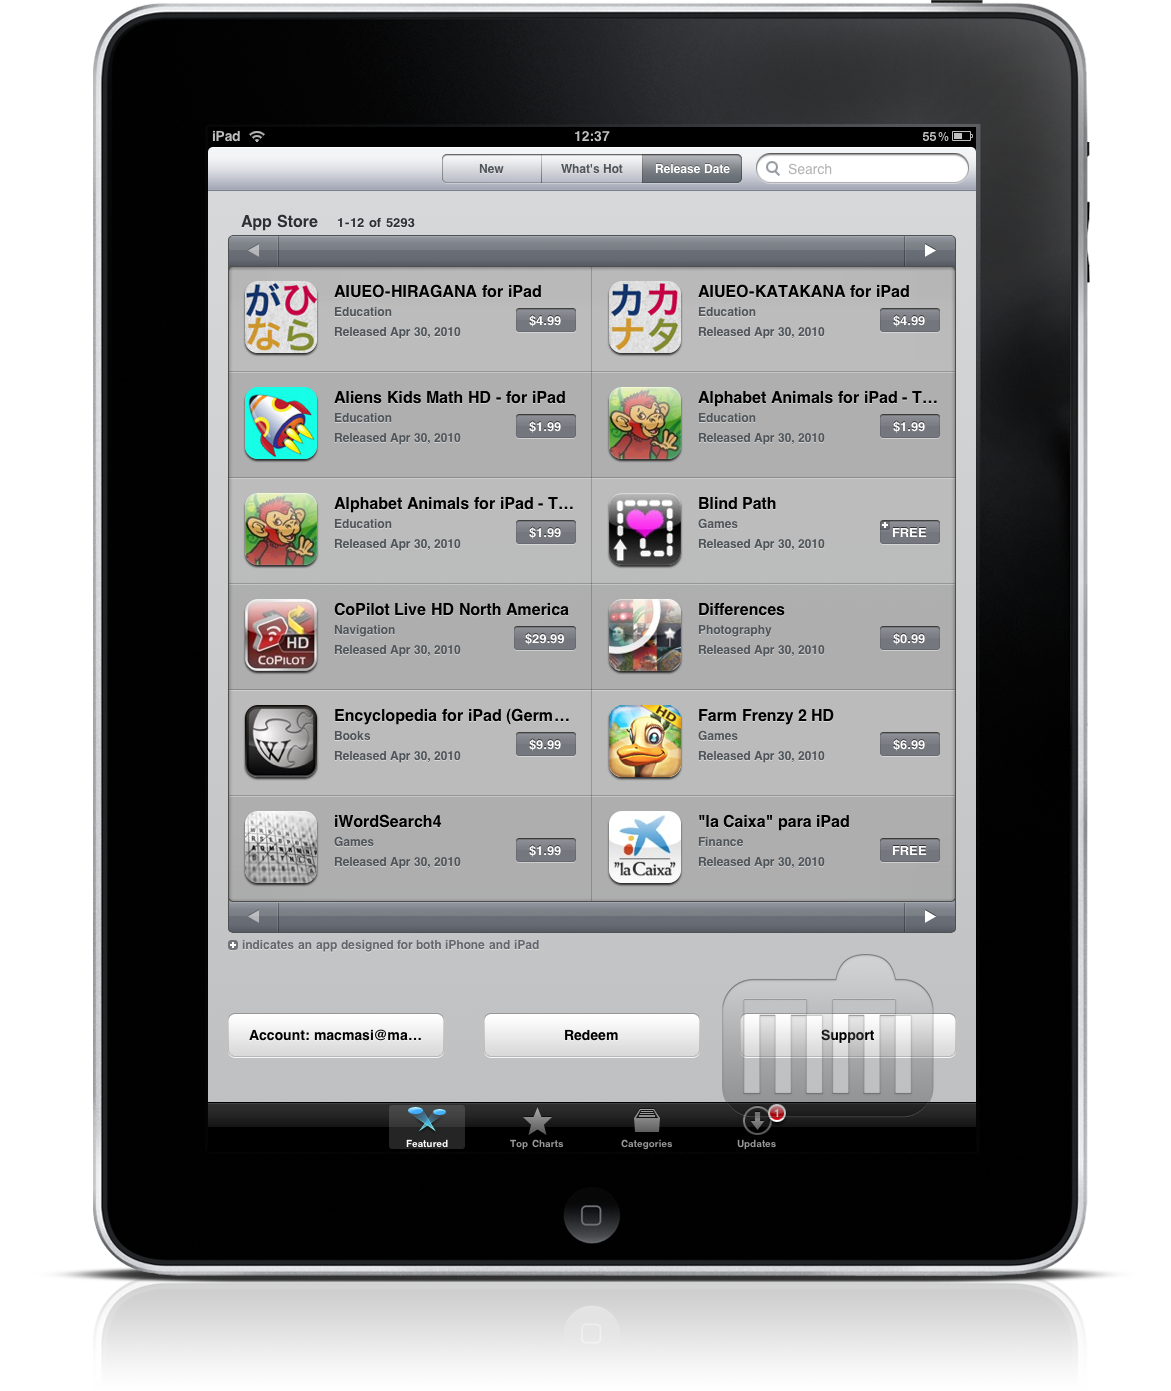 iPad App Store agora classifica itens por data de lançamento